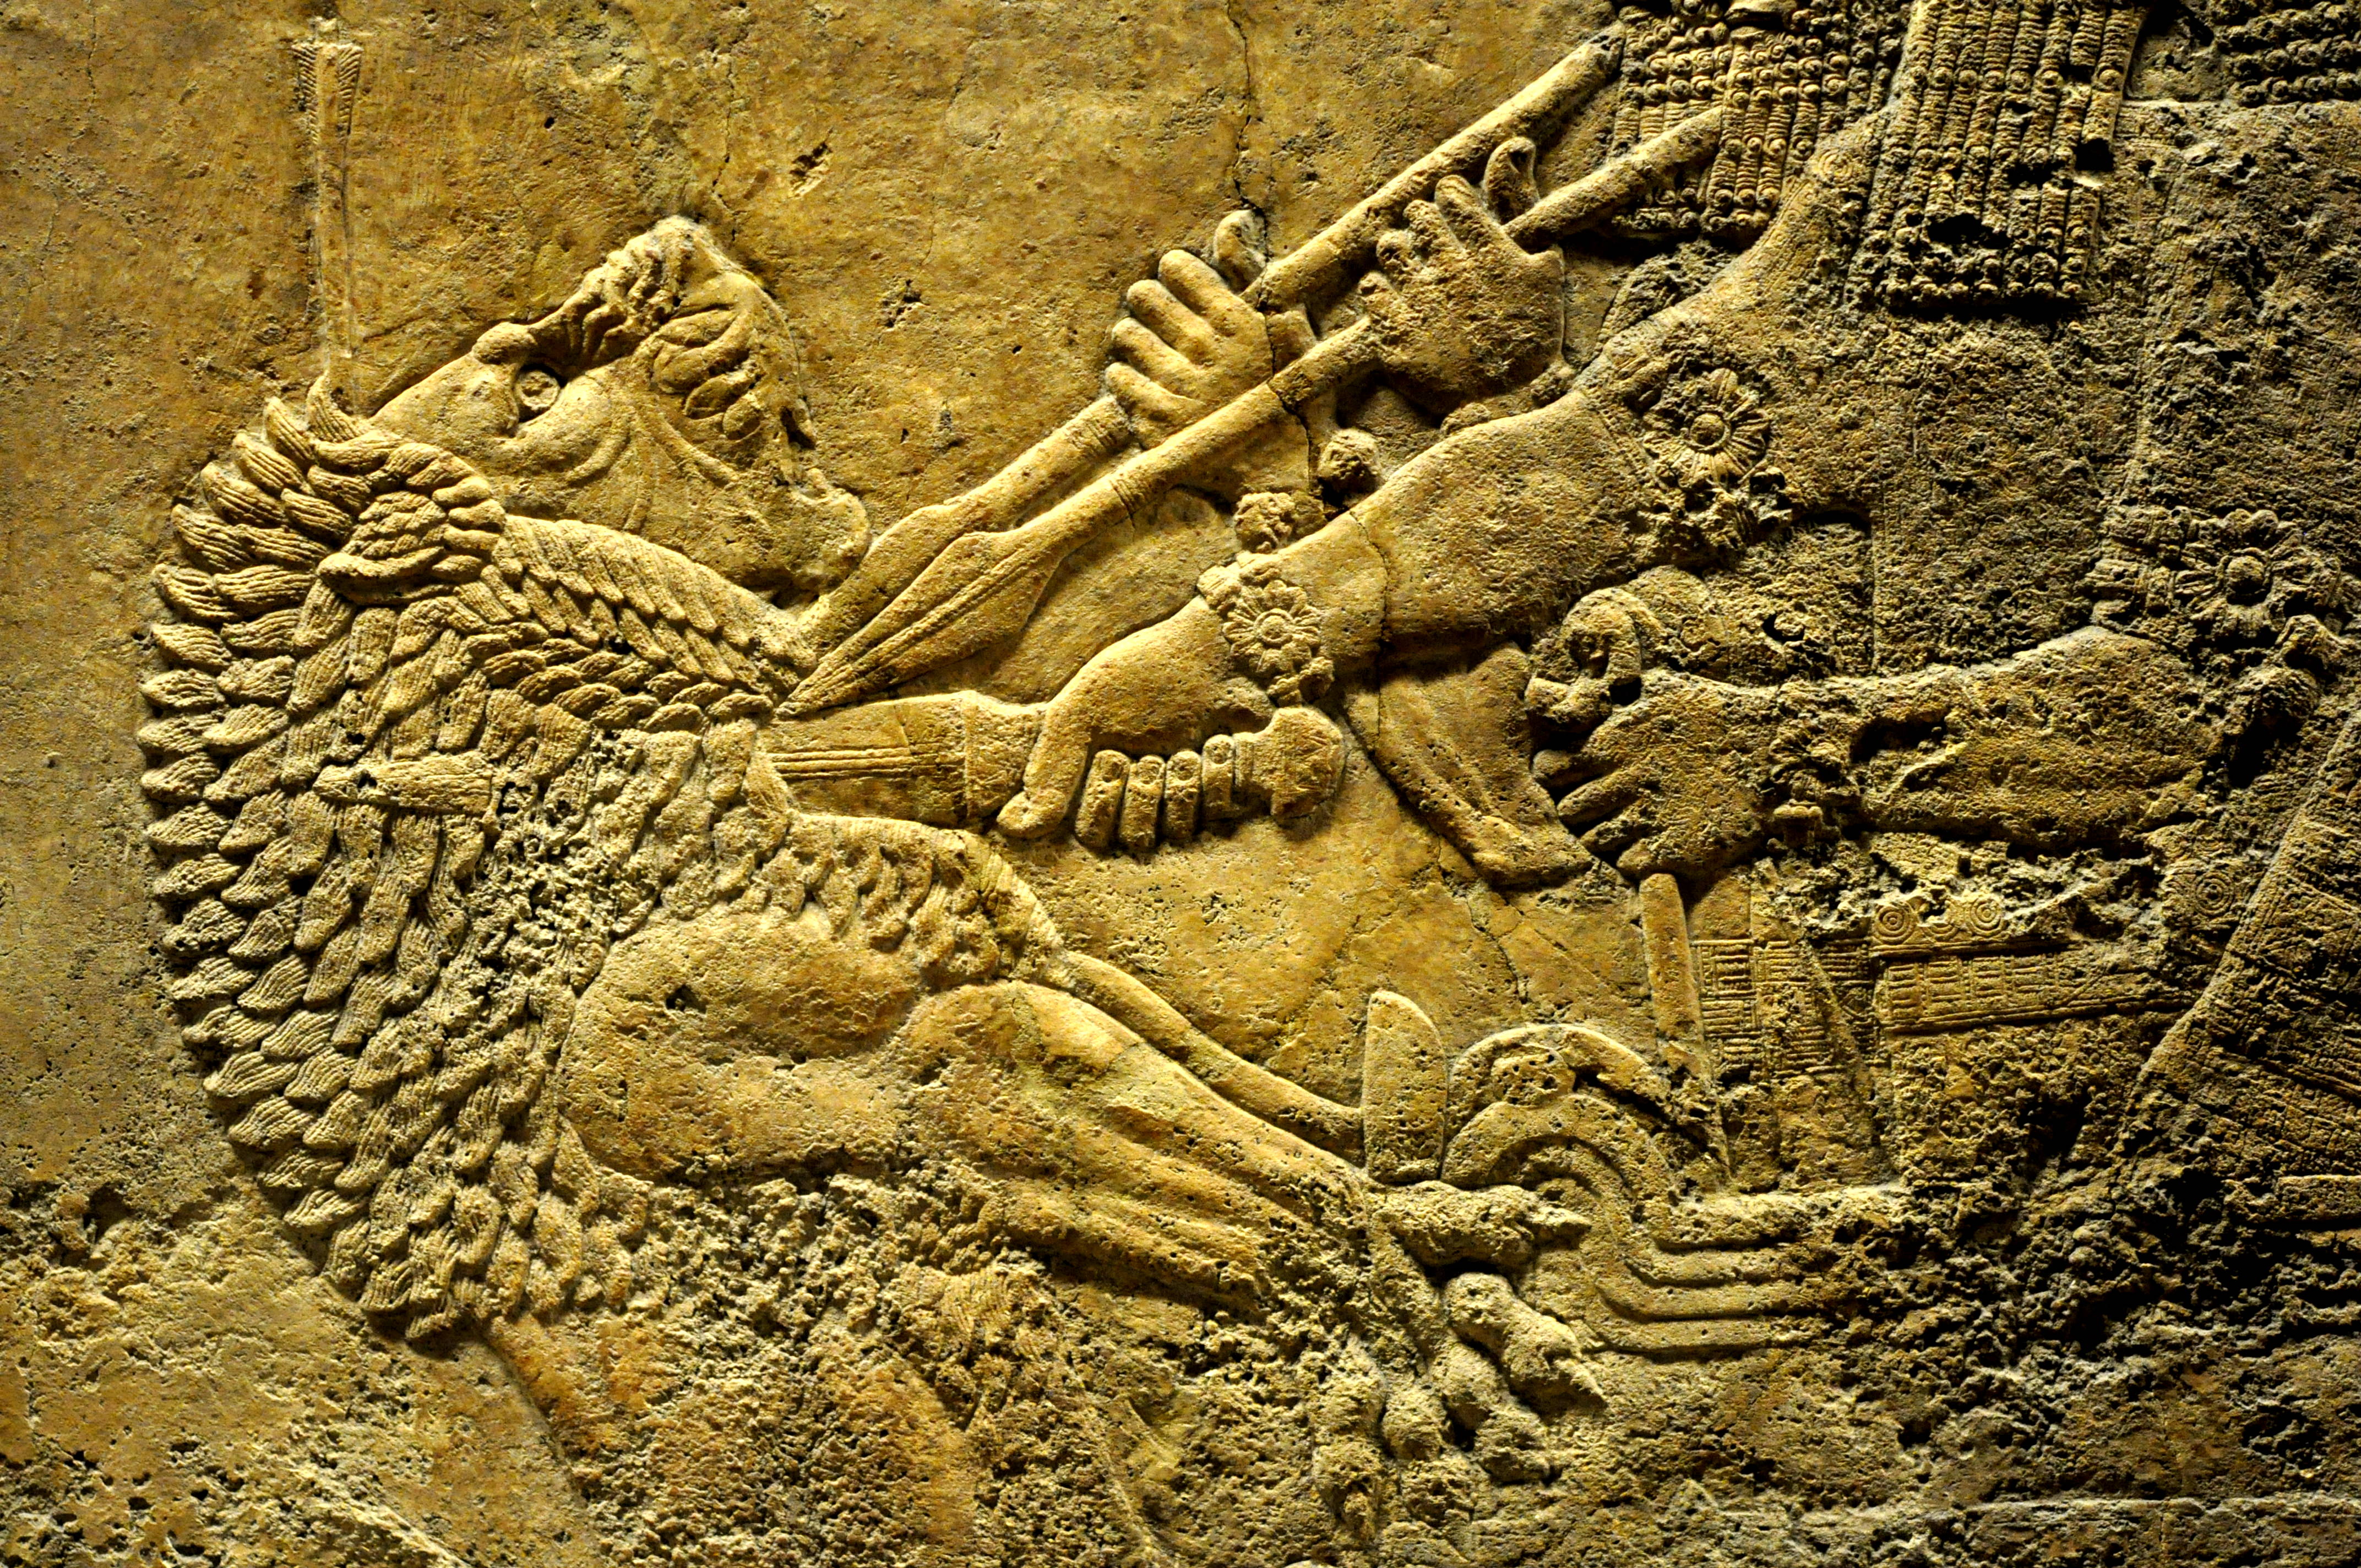 assyrian artifacts